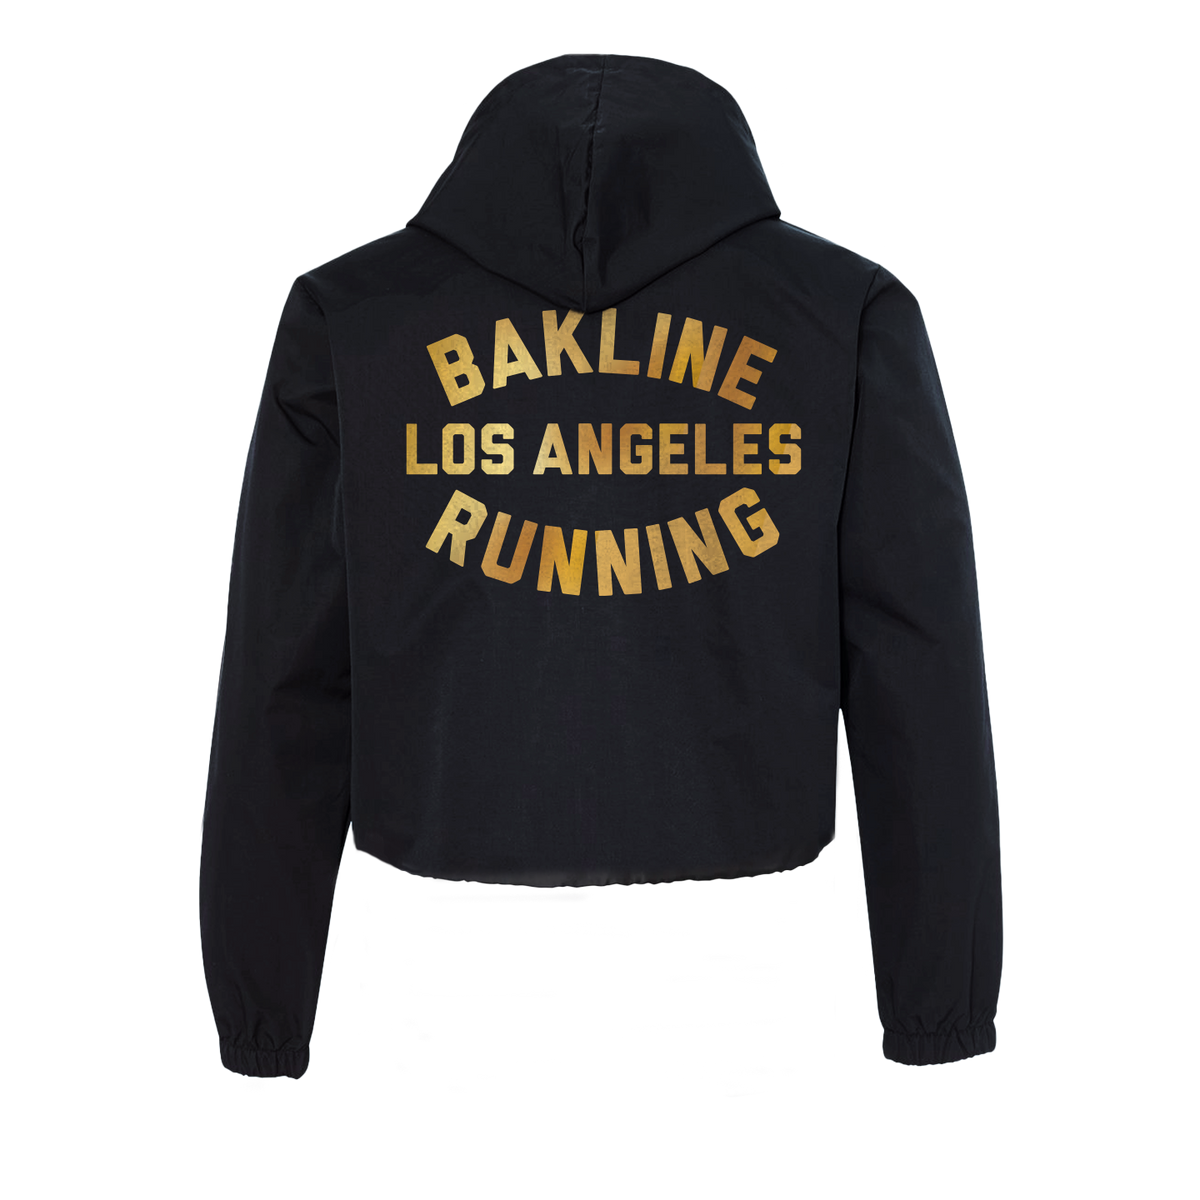 Los Angeles - Pullover Cropped Windbreaker - Women's - Bakline